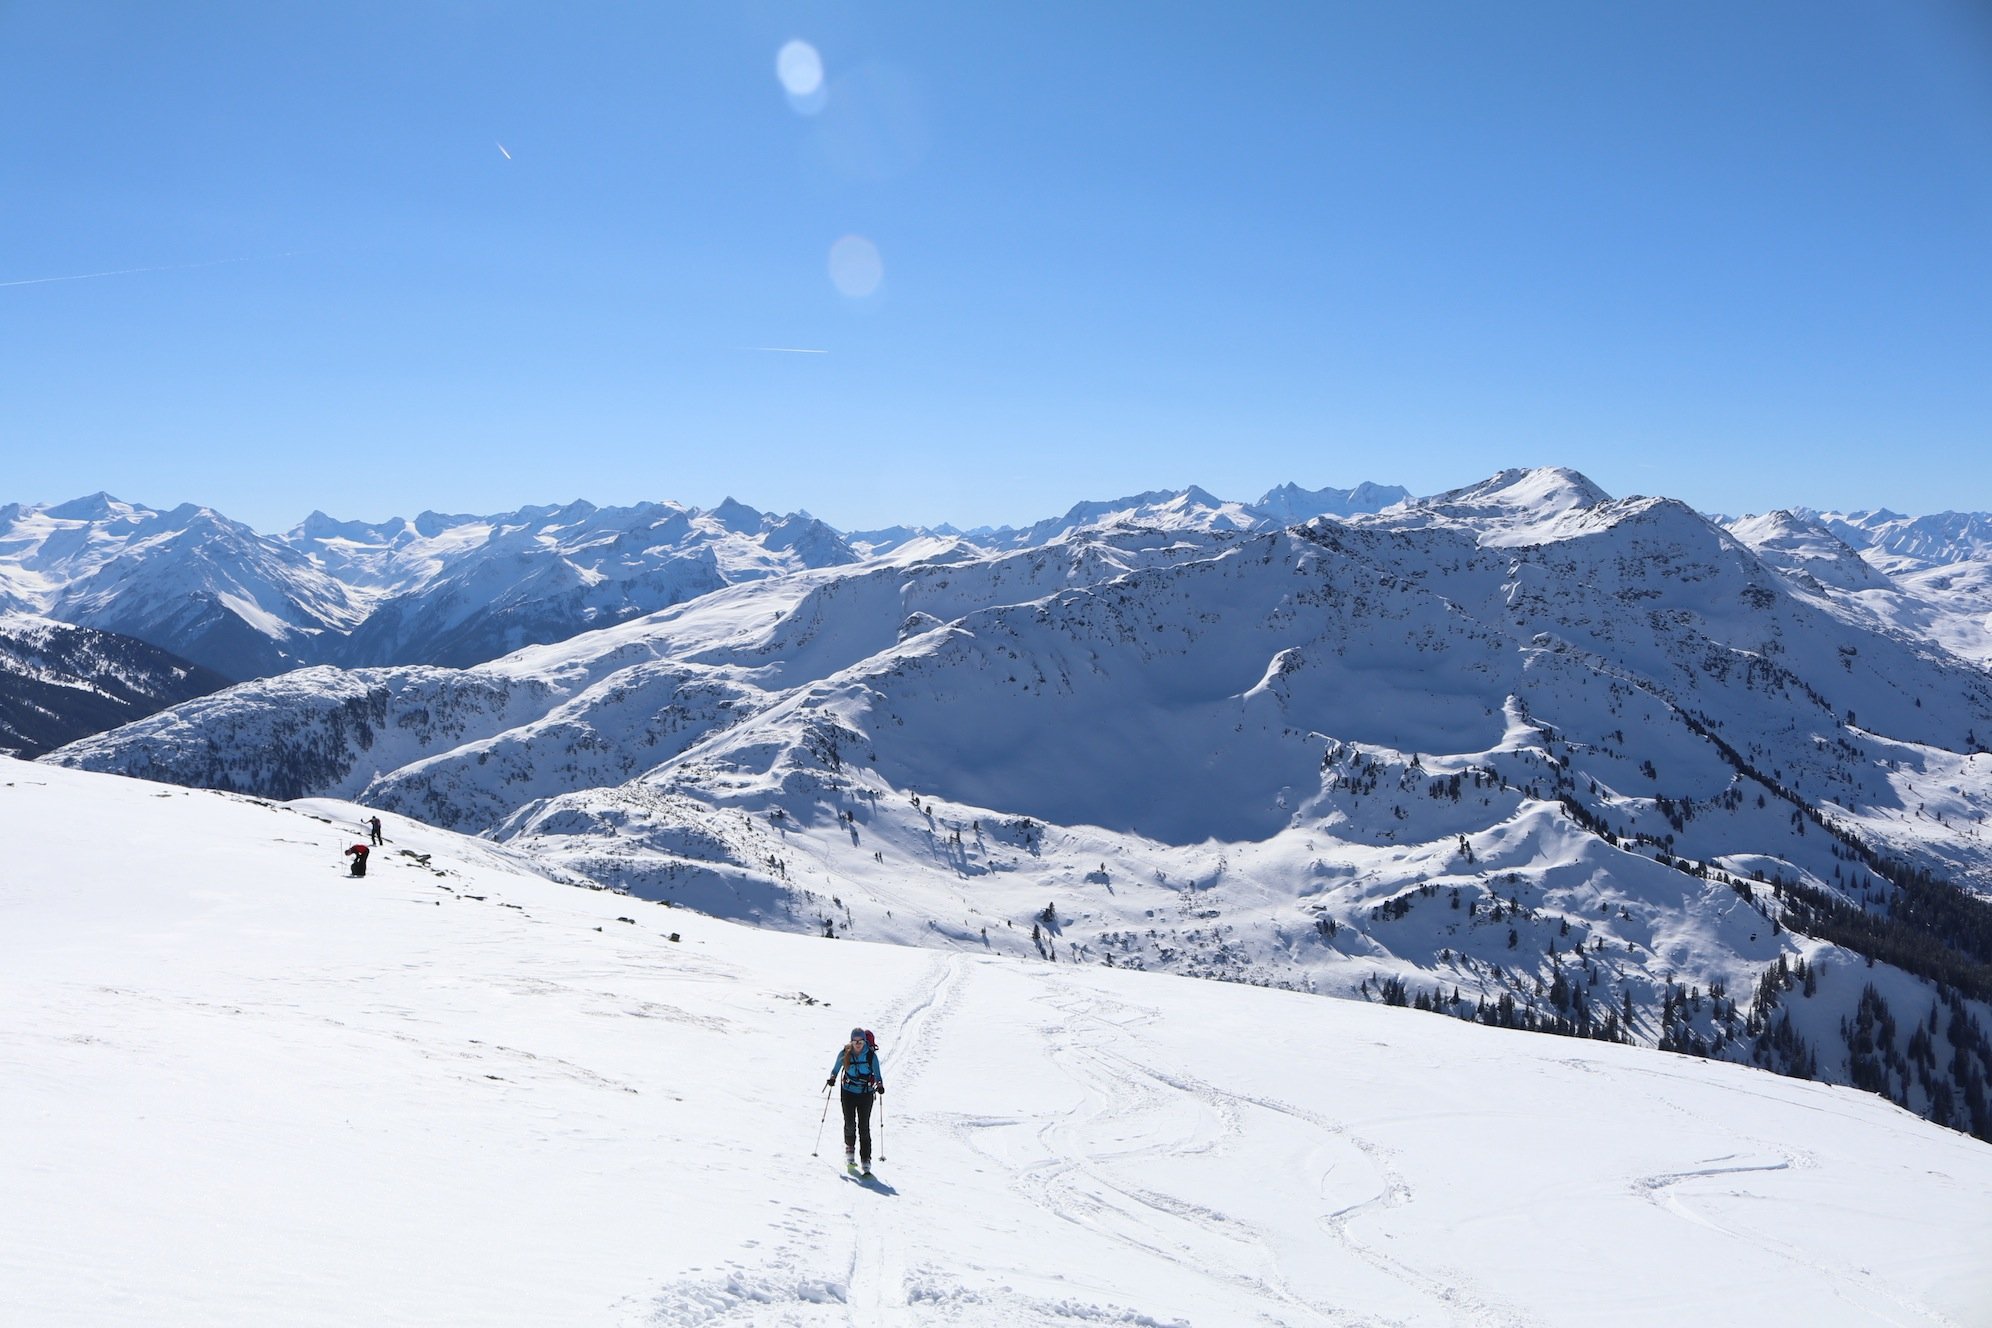 Kolumne - Das ist ja der Gipfel #5: Auf die Piste, fertig, los - Skitourengeher als Spielverderber par excellence!?